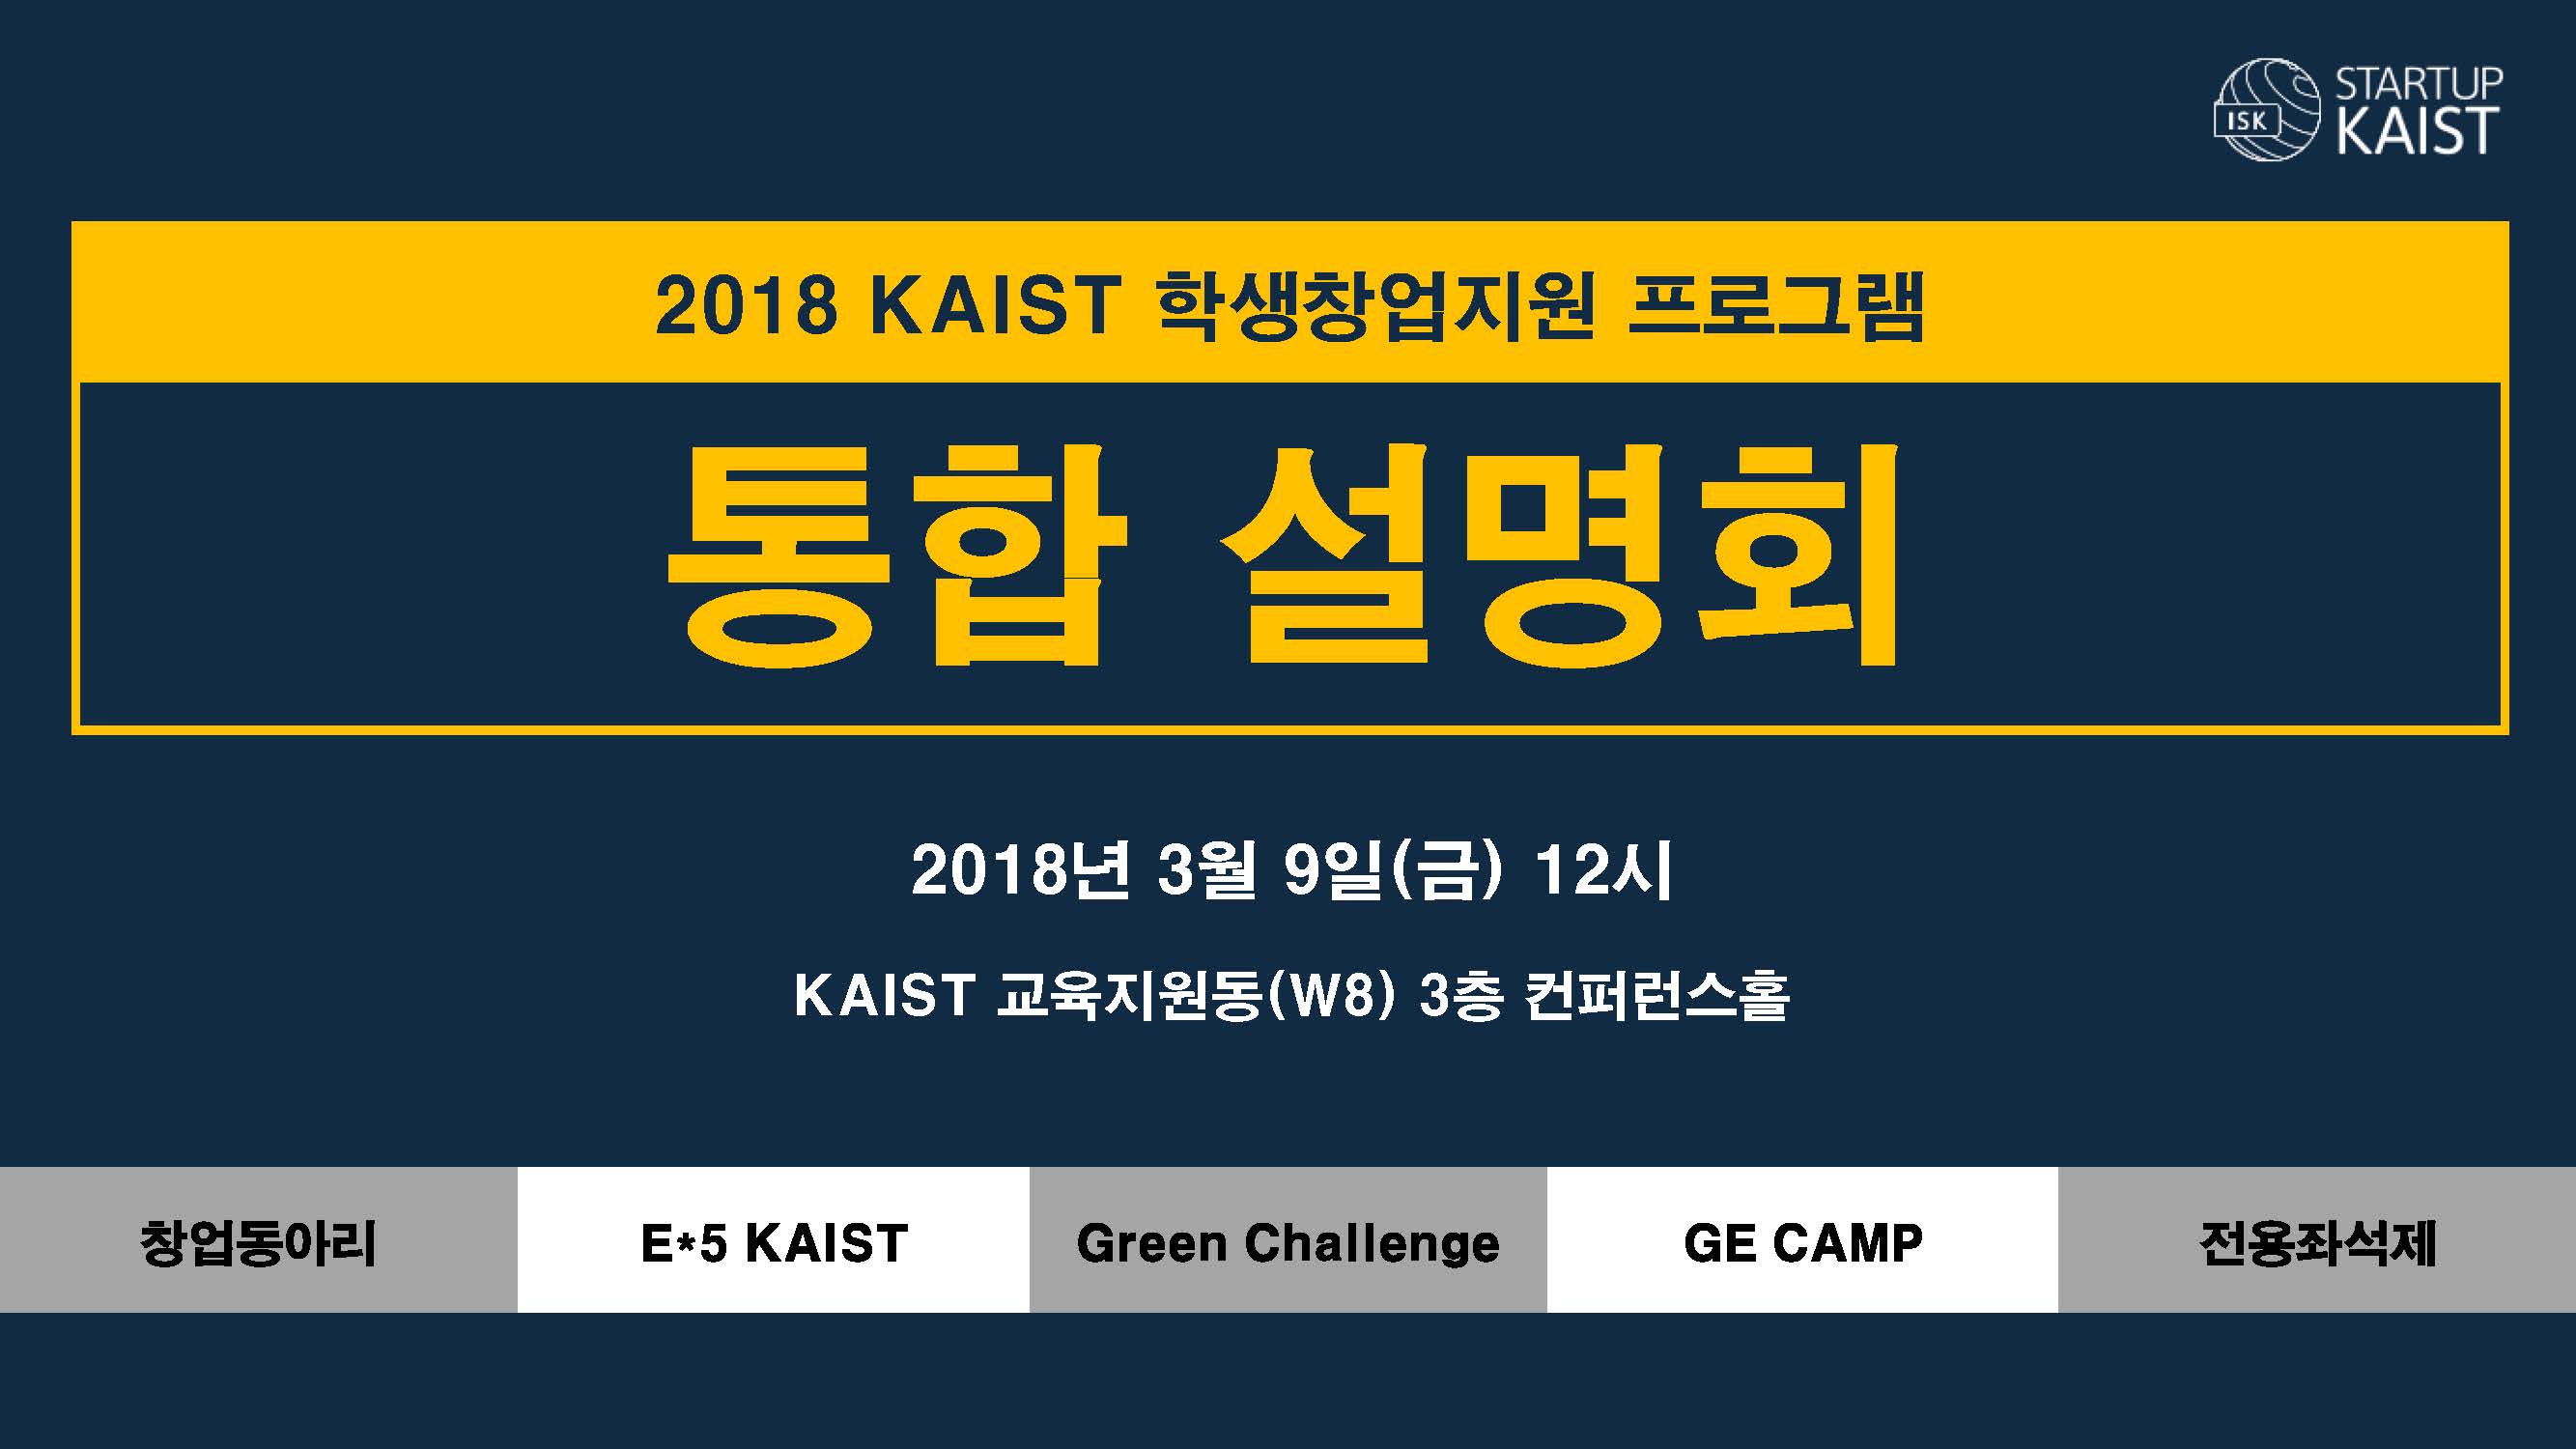 2018년도 KAIST 학생창업지원 프로그램 통합설명회 개최